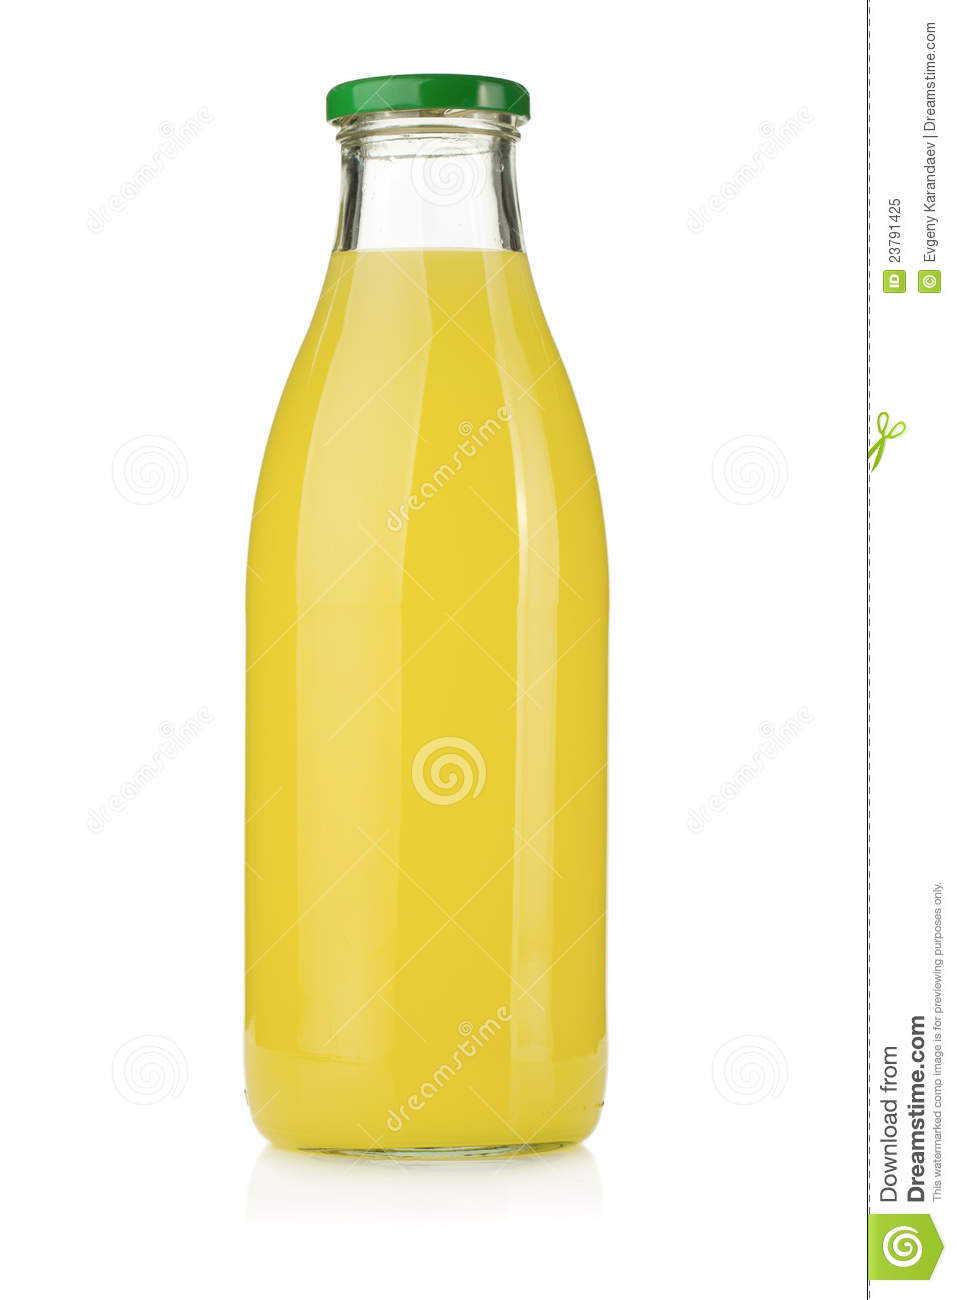 Lemon Juice Bottle Royalty Free Stock Photo   Image  23791425